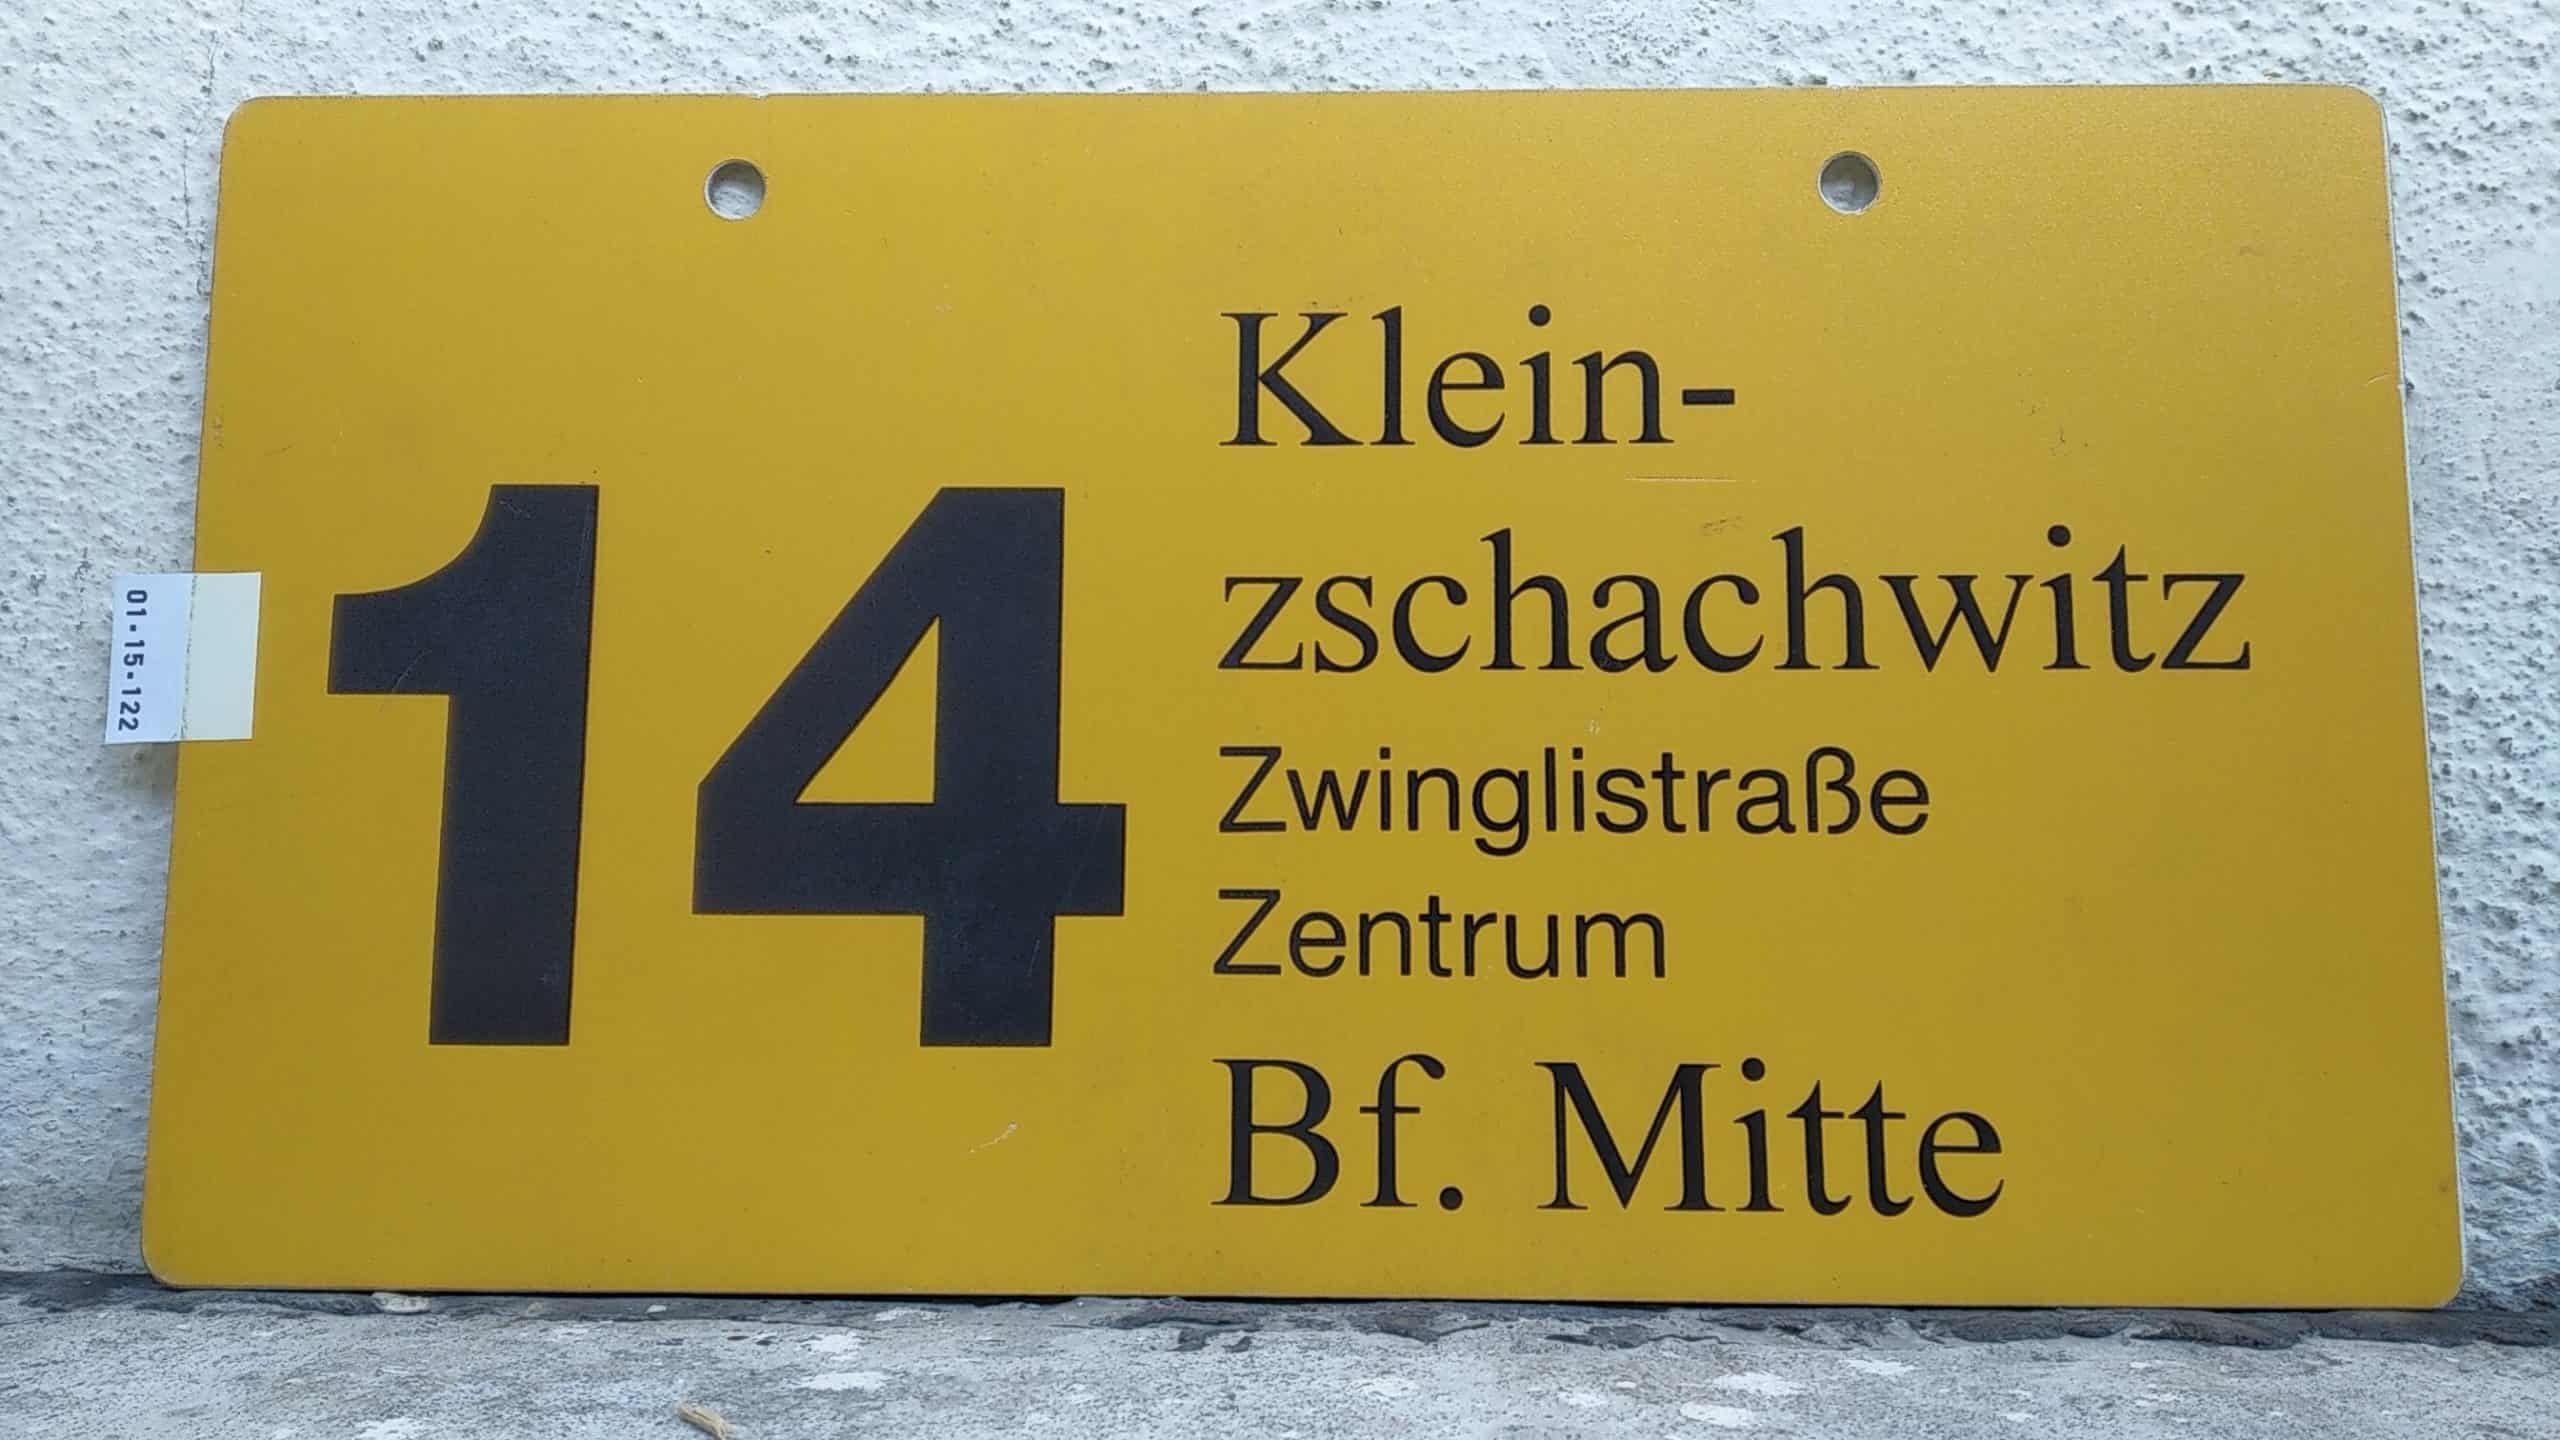 Ein seltenes Straßenbahn-Linienschild aus Dresden der Linie 14 von Kleinnach zschachwitz nach Bf. Mitte #1